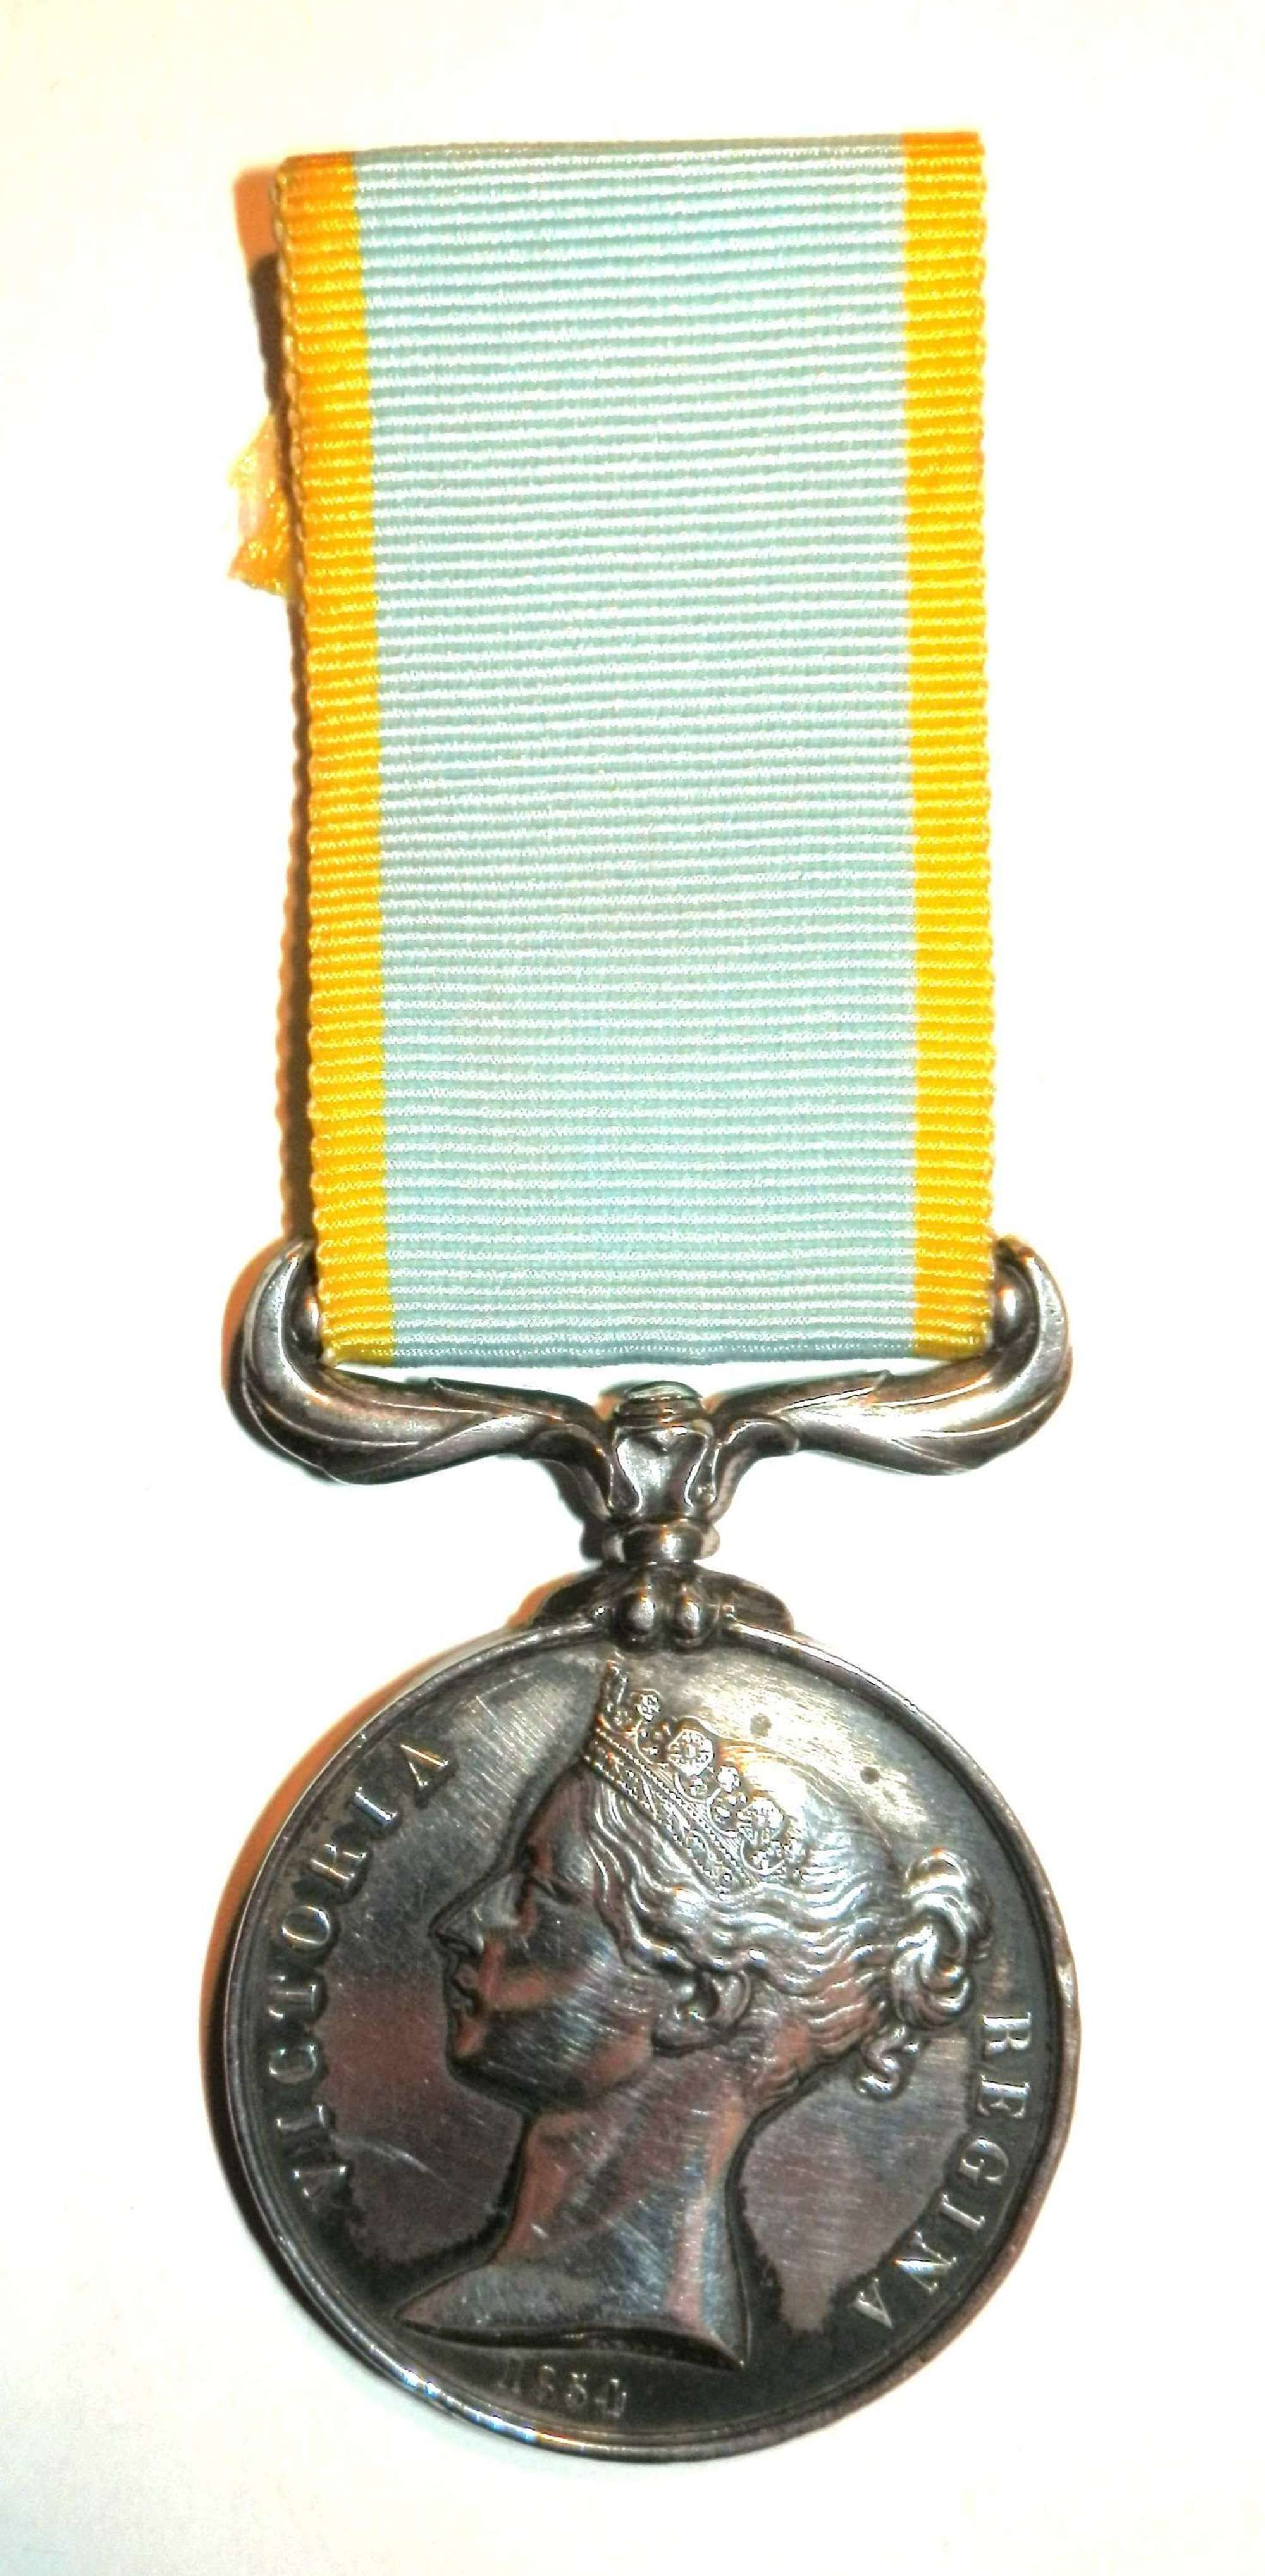 Crimea Medal 1854-56, “un-named”.